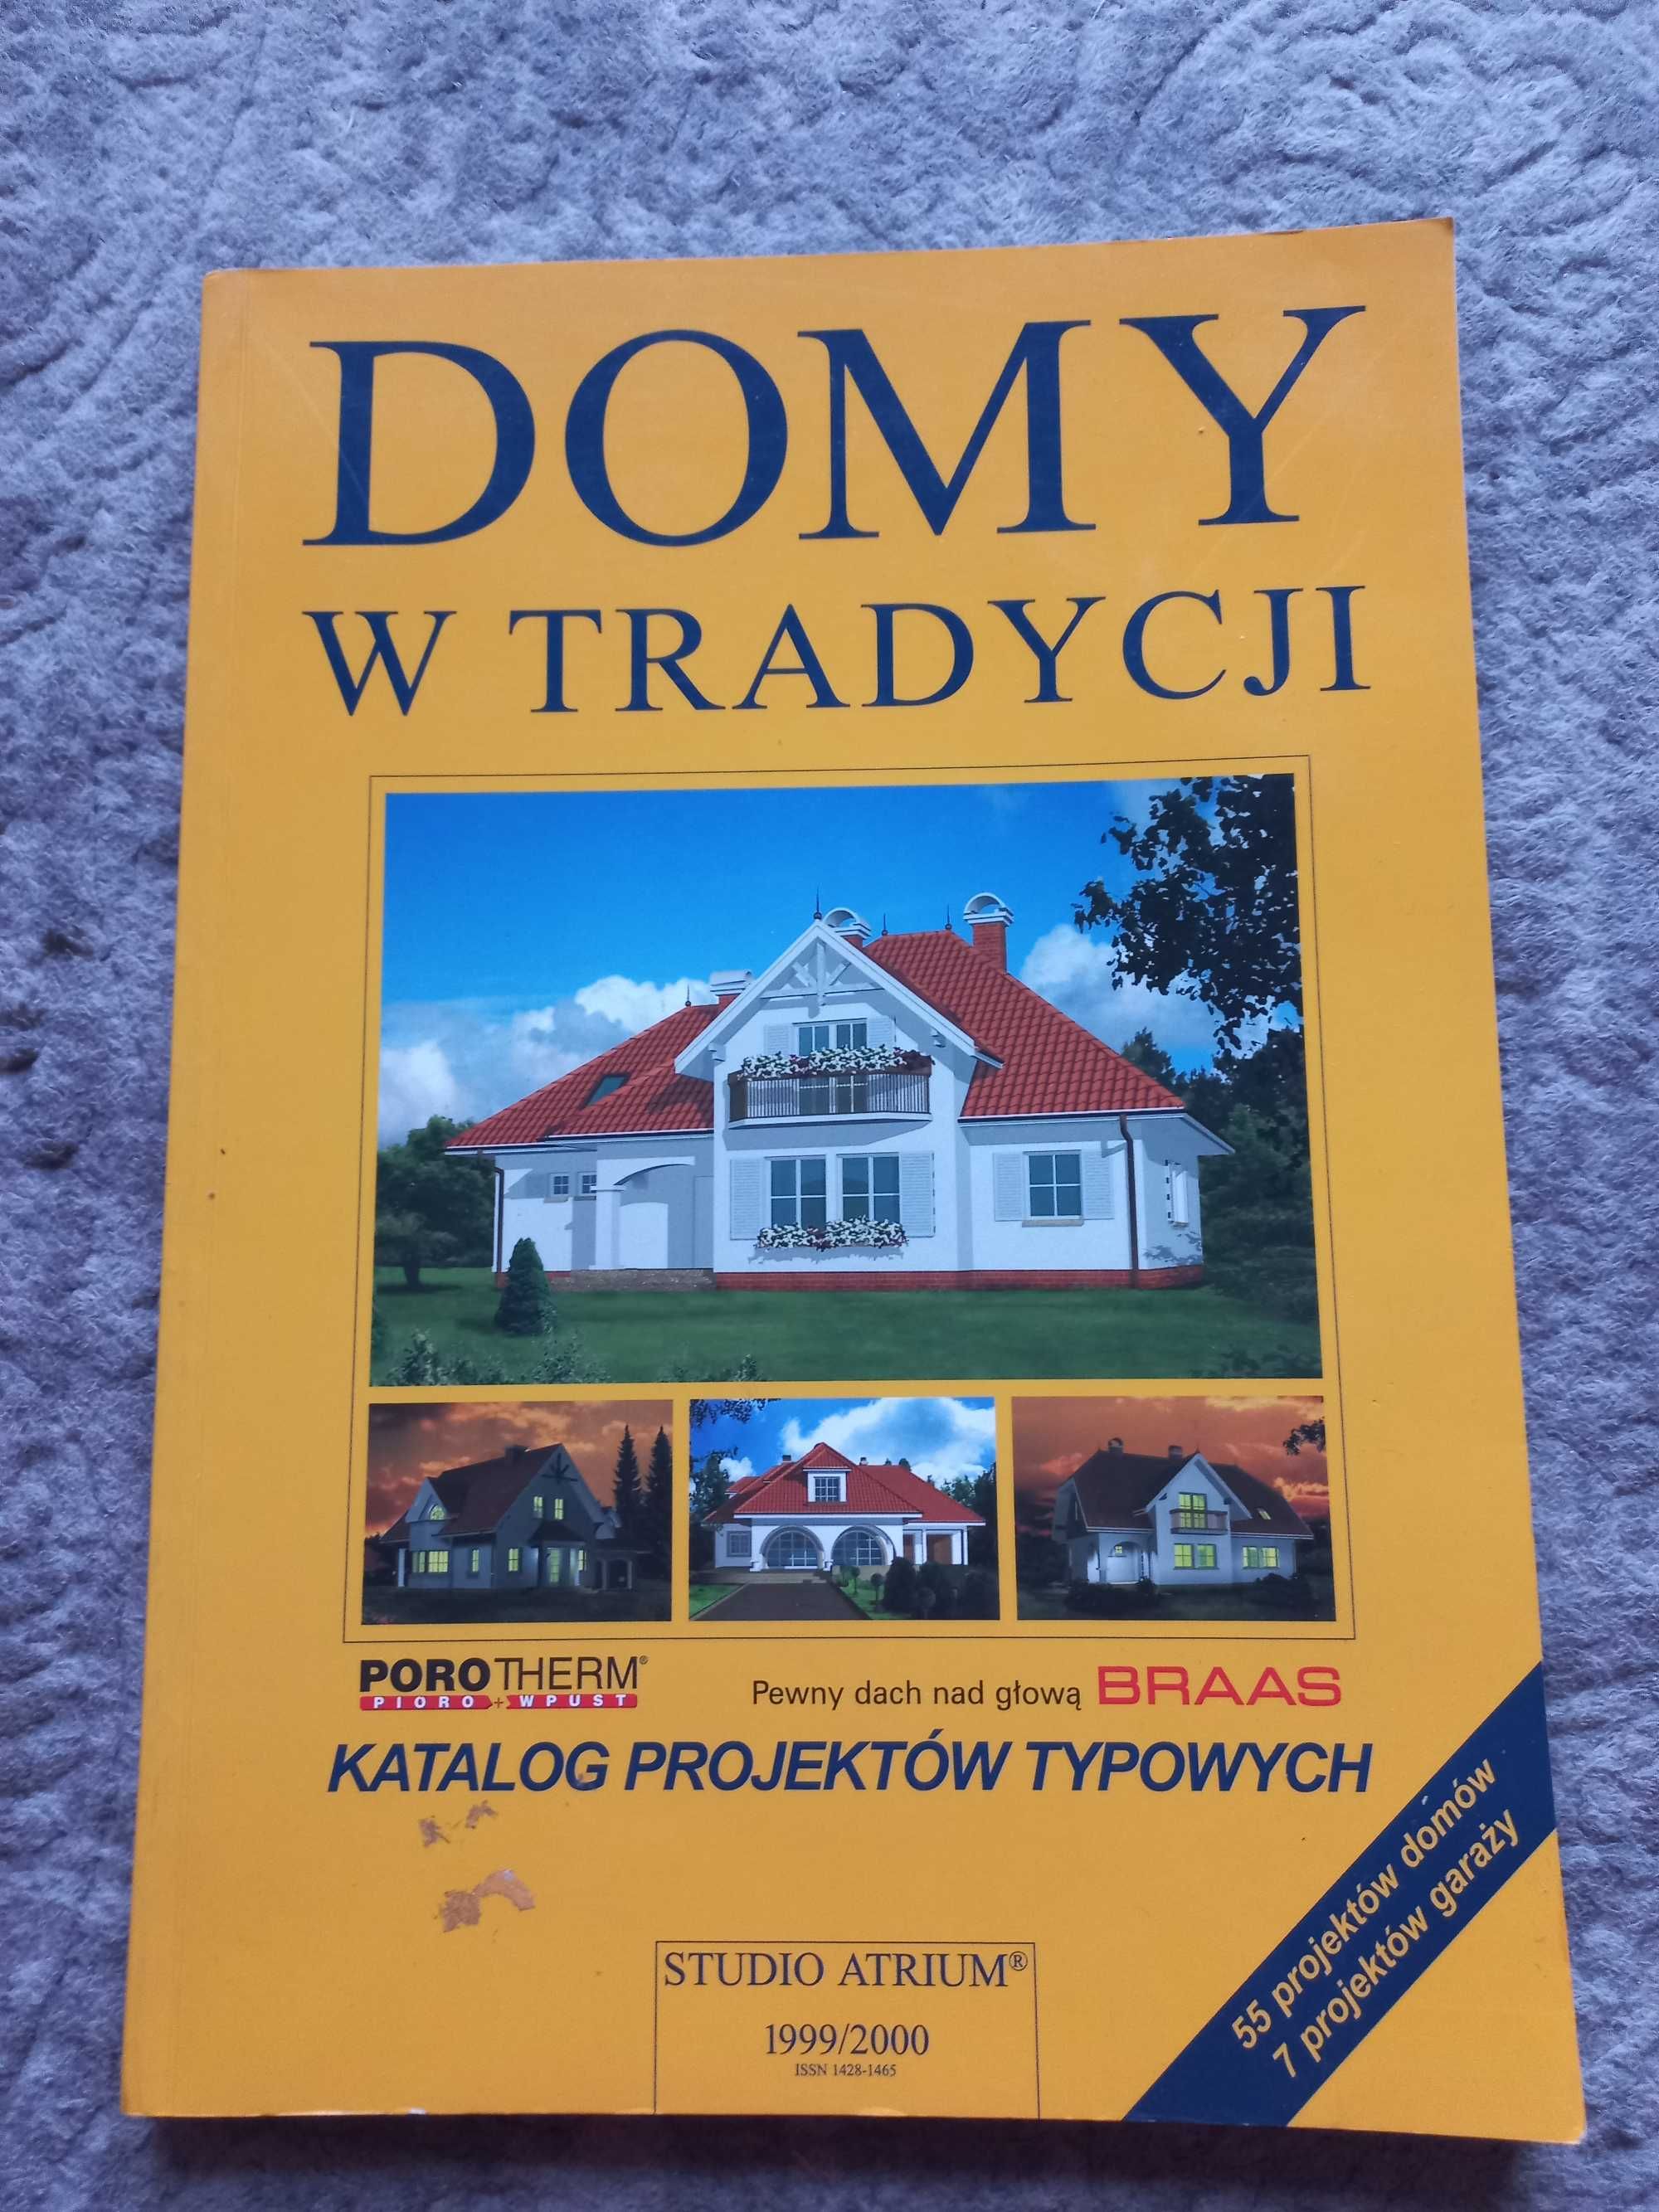 Domy w tradycji katalog z 1999/2000